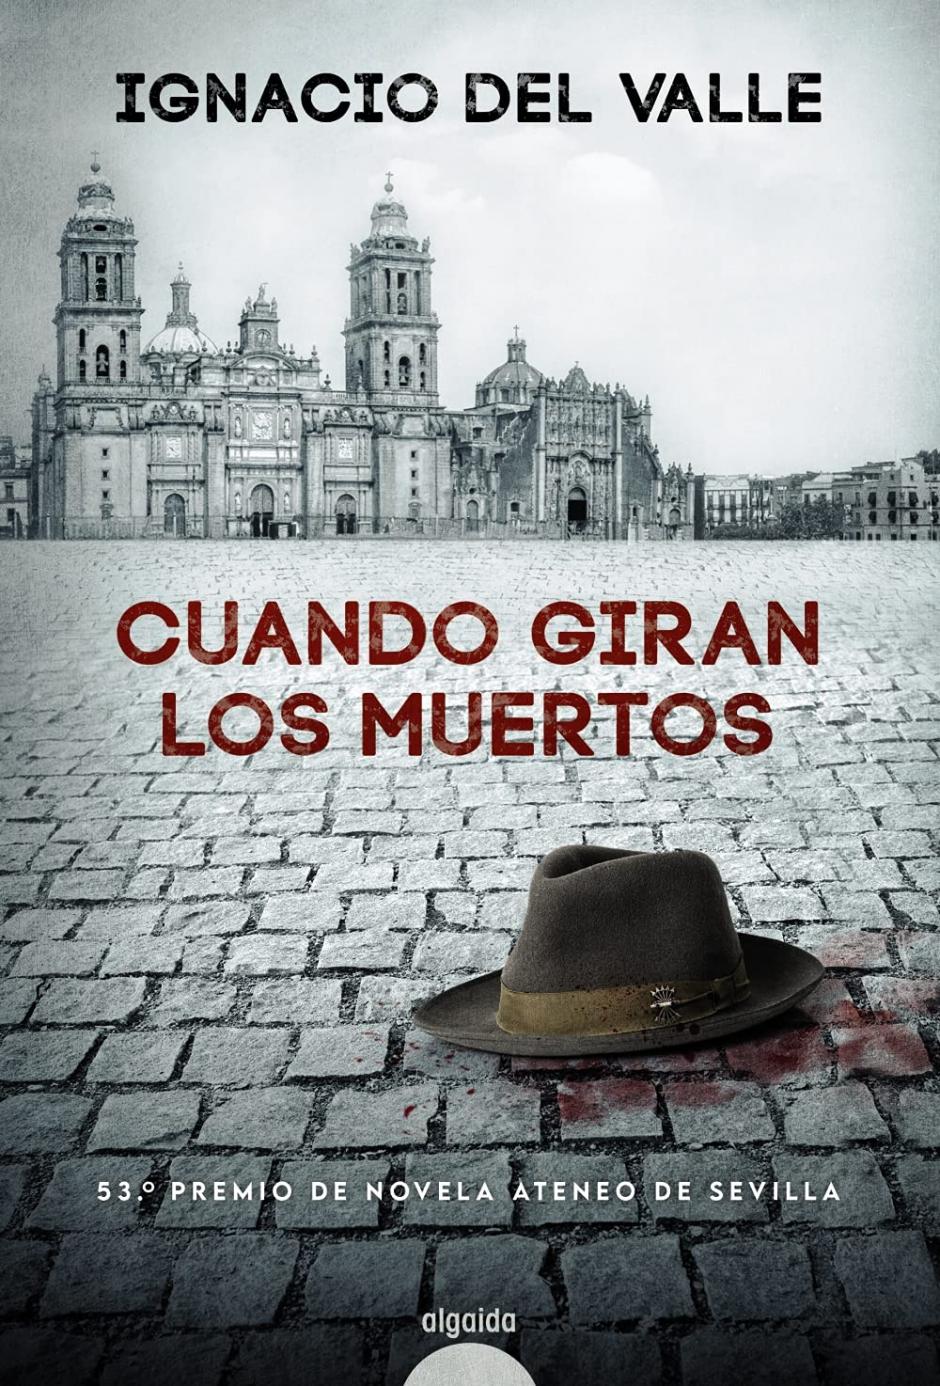 'Cuando giran los muertos', la nueva novela de Ignacio del Valle